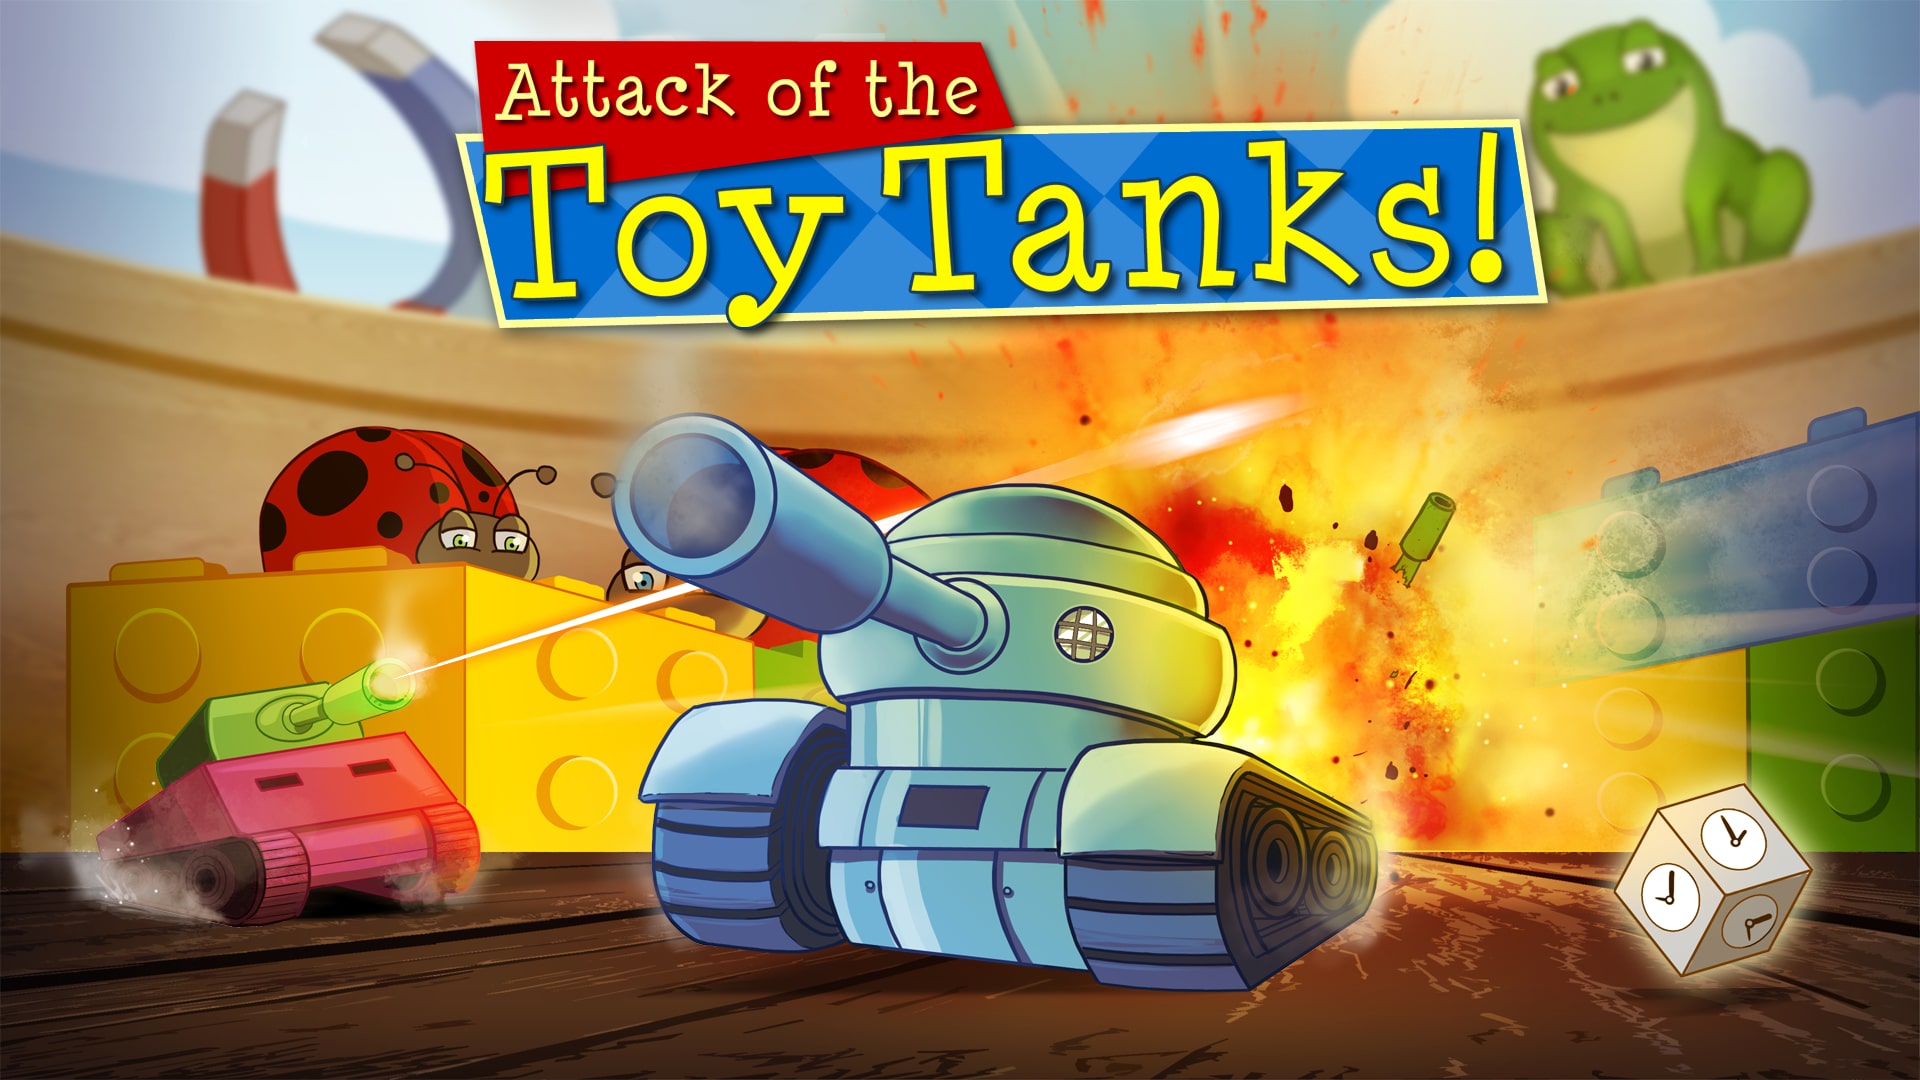 Tombotoys Children Plastic 2.4G R/C Tanks Toys Battle Series